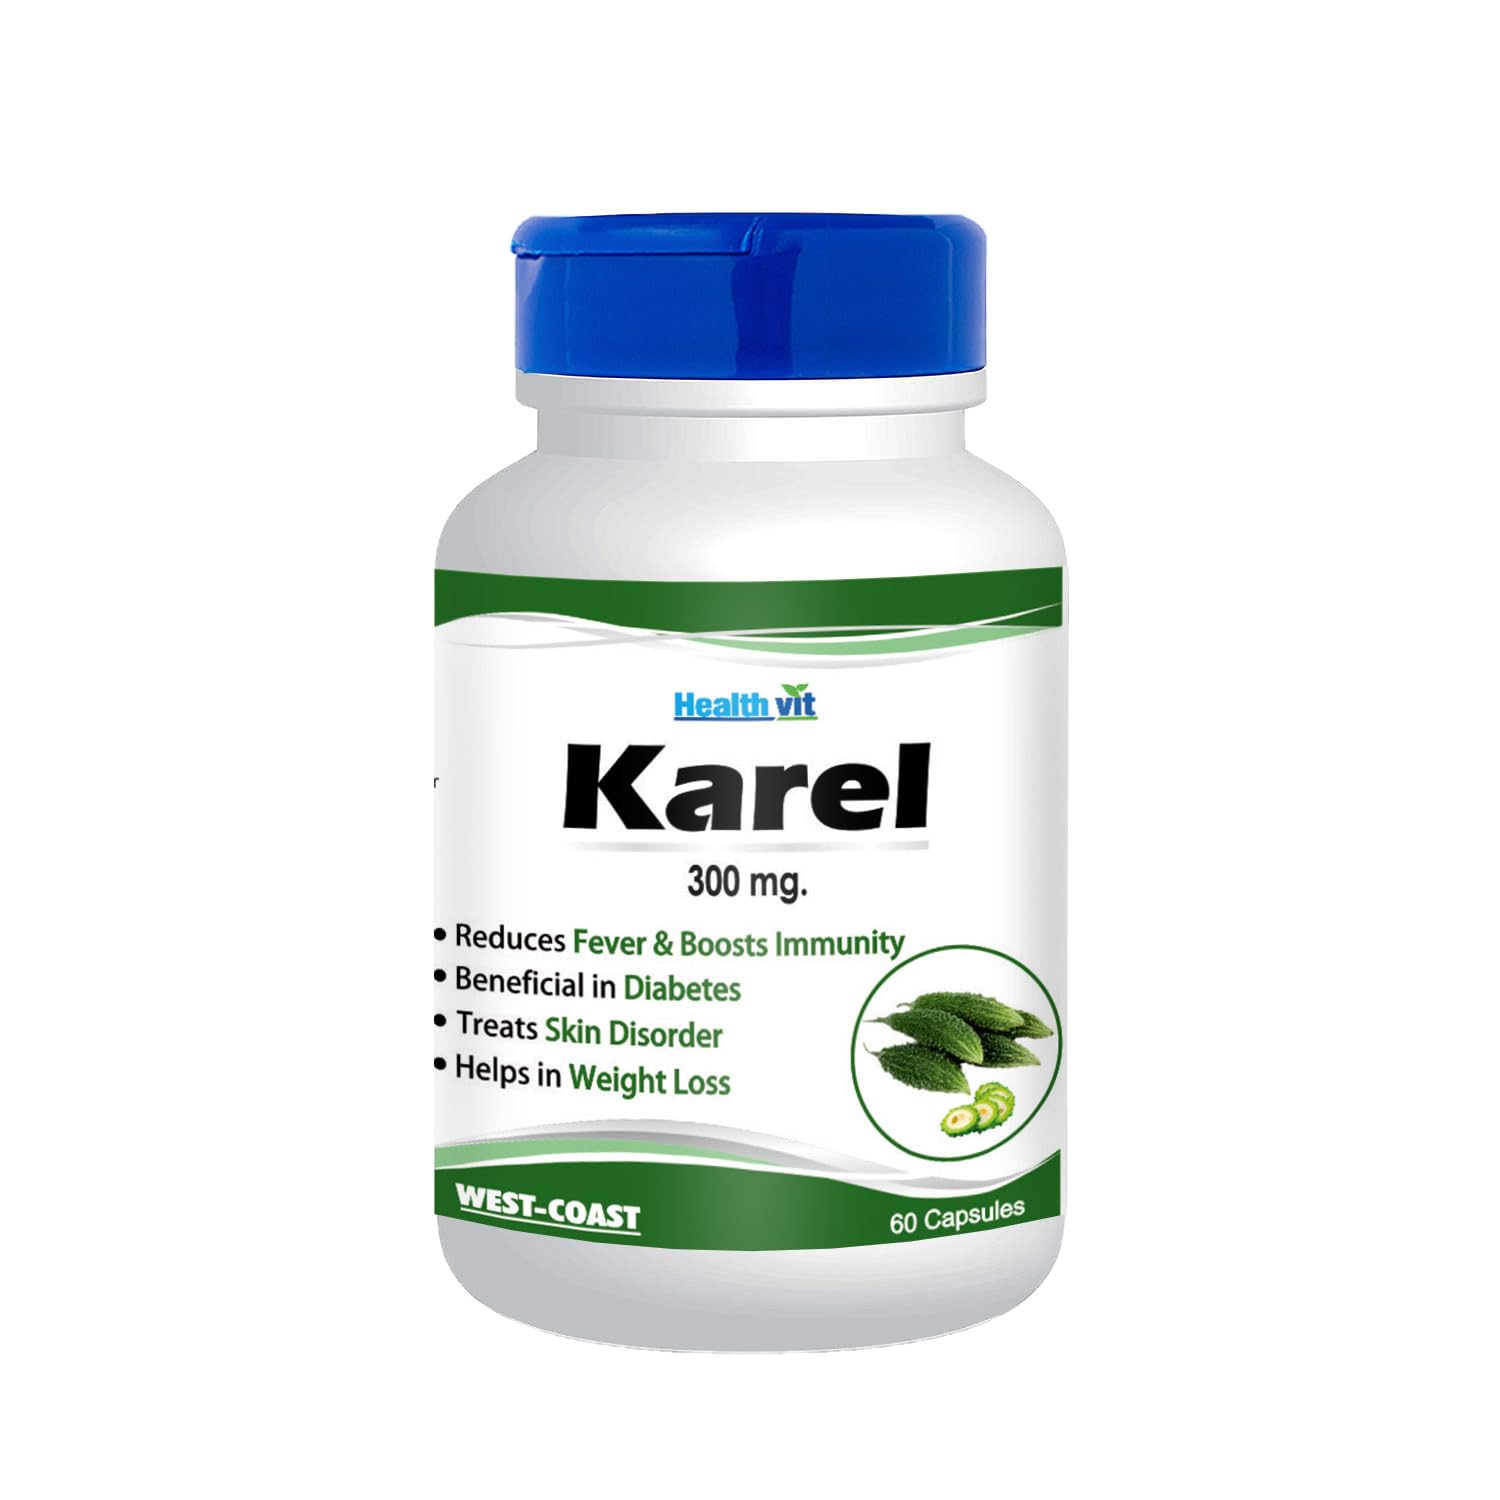 Healthvit Karel Karela Powder 300 mg Supplement 60 Capsules